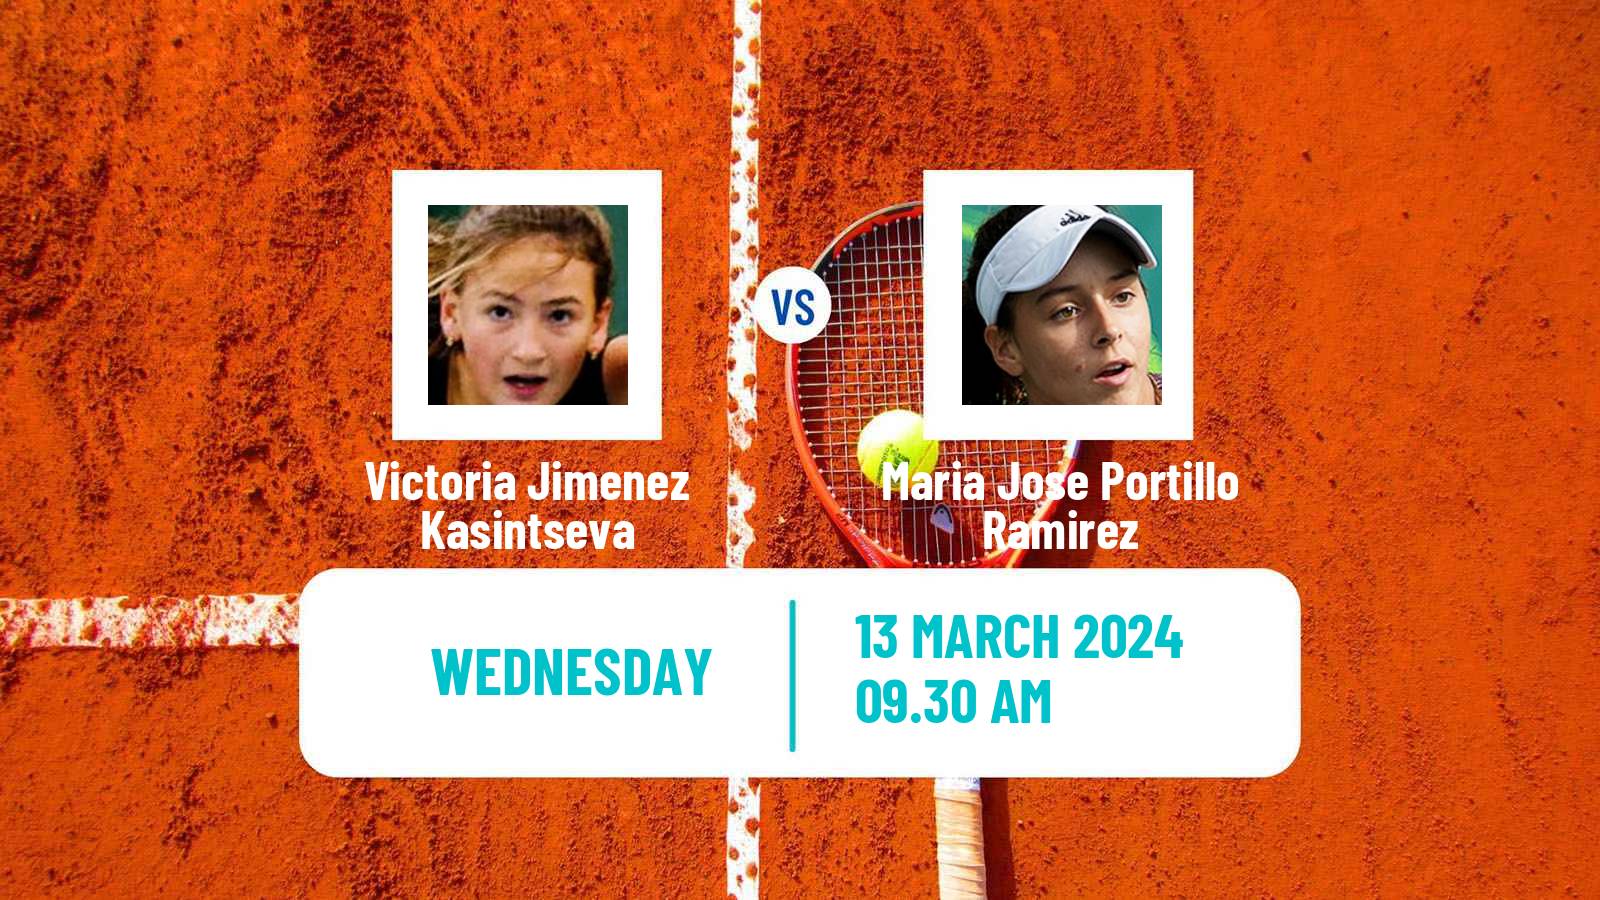 Tennis ITF W35 Santo Domingo 2 Women Victoria Jimenez Kasintseva - Maria Jose Portillo Ramirez